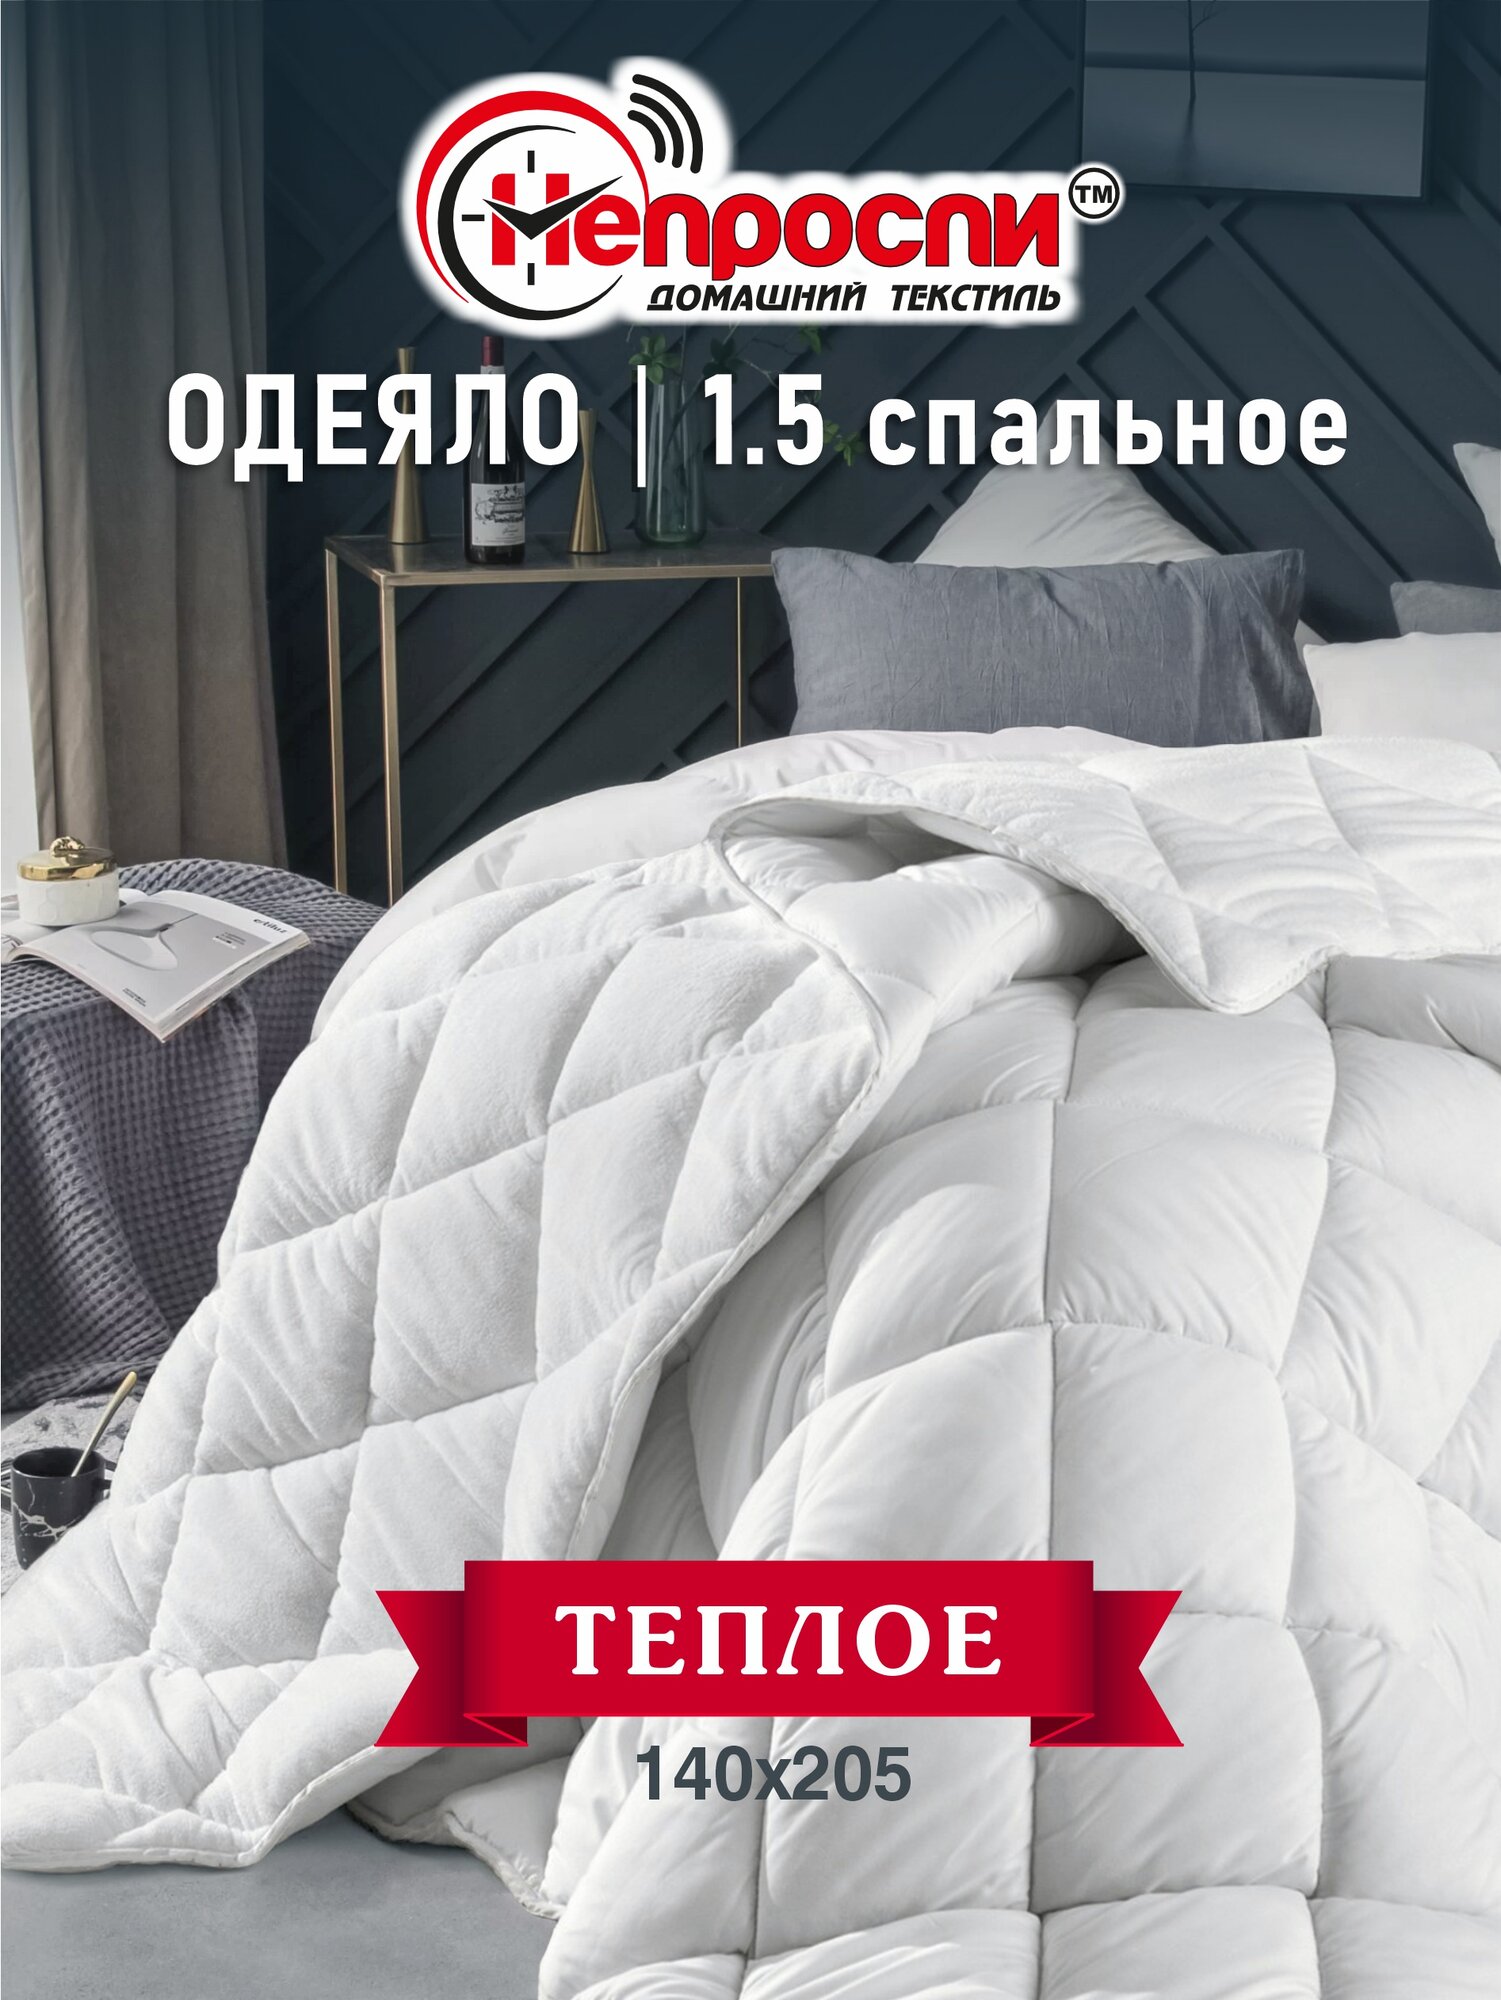 Одеяло Непроспи "Бамбук" 1,5 - спальное 140х205 см / Демисезонное, теплое, стеганое одеяло из бамбукового волокна